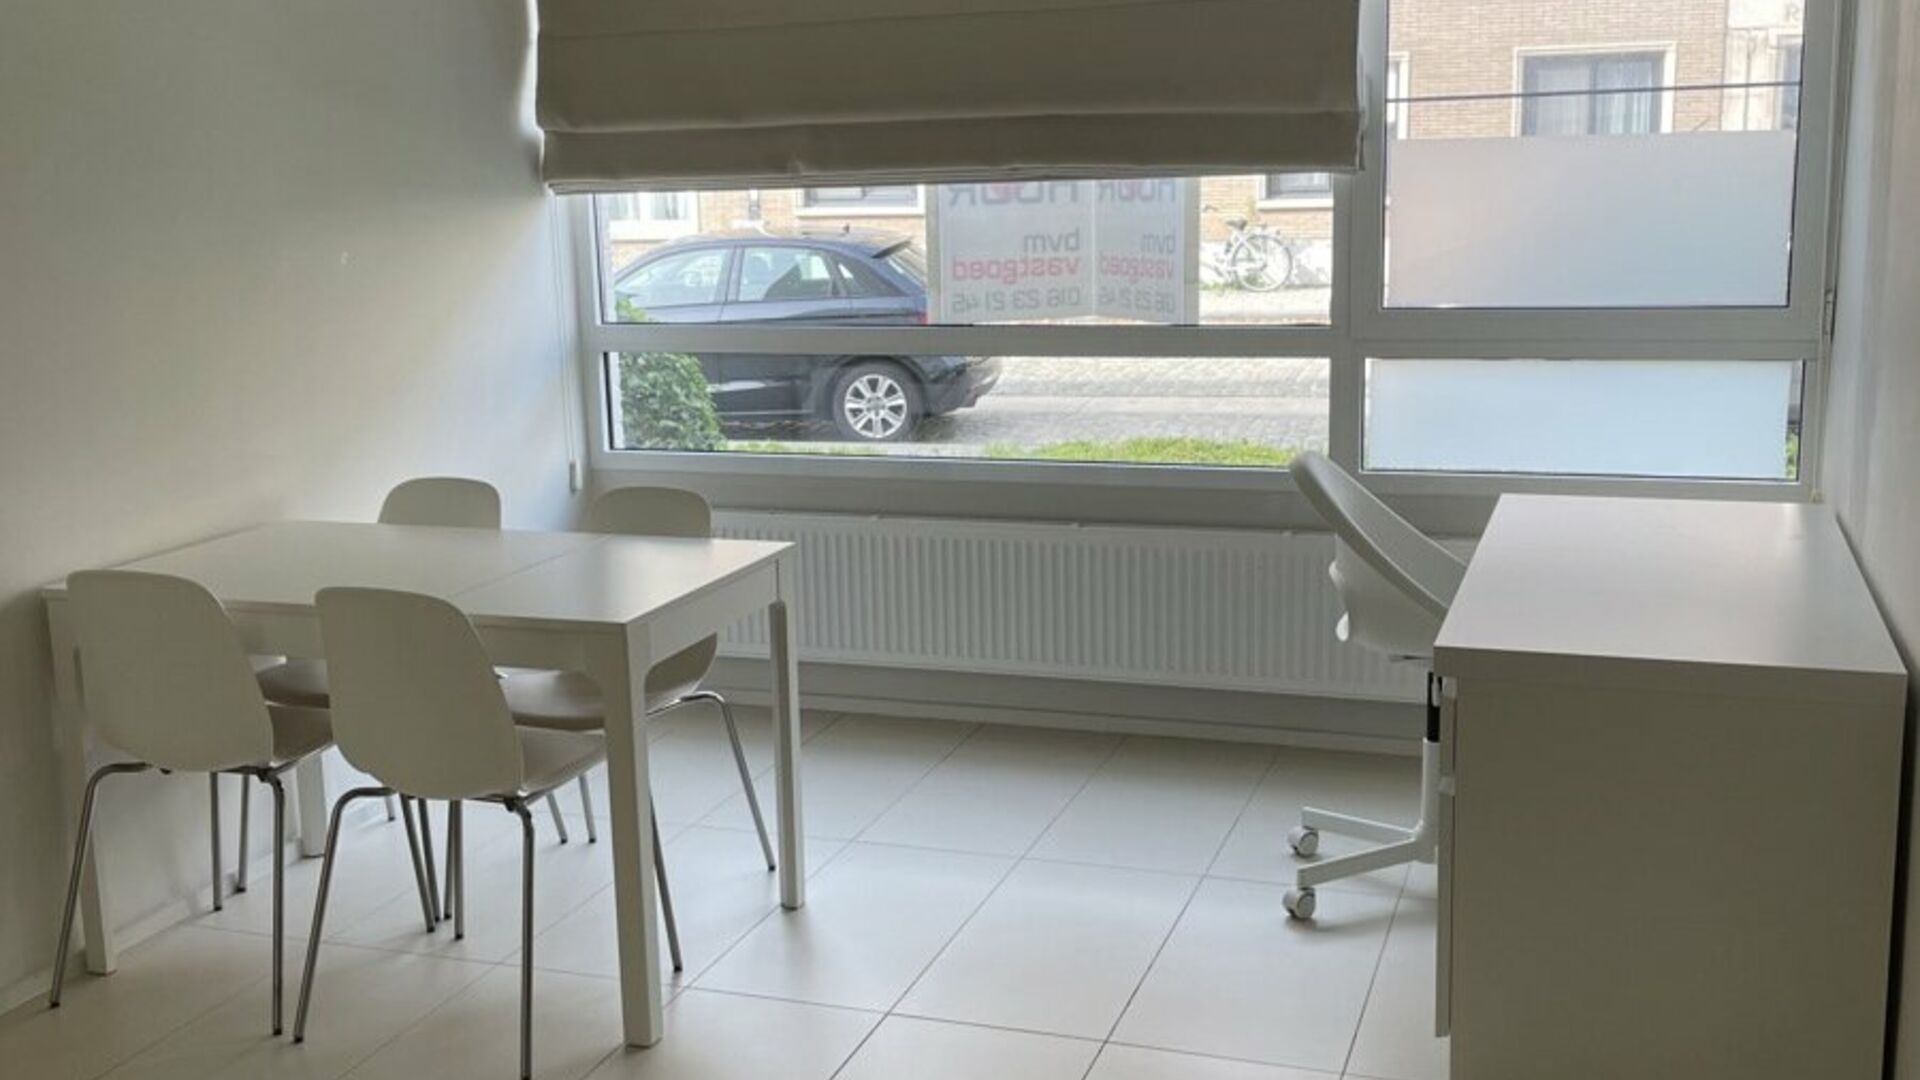 Bienvenue dans ce spacieux studio d'étudiant situé au cœur de Louvain ! 
Ce studio spacieux dispose d'une kitchenette installée, de ses propres installations sanitaires et d'un espace de couchage séparé.
Grâce aux grandes fenêtres, vous pouvez ég